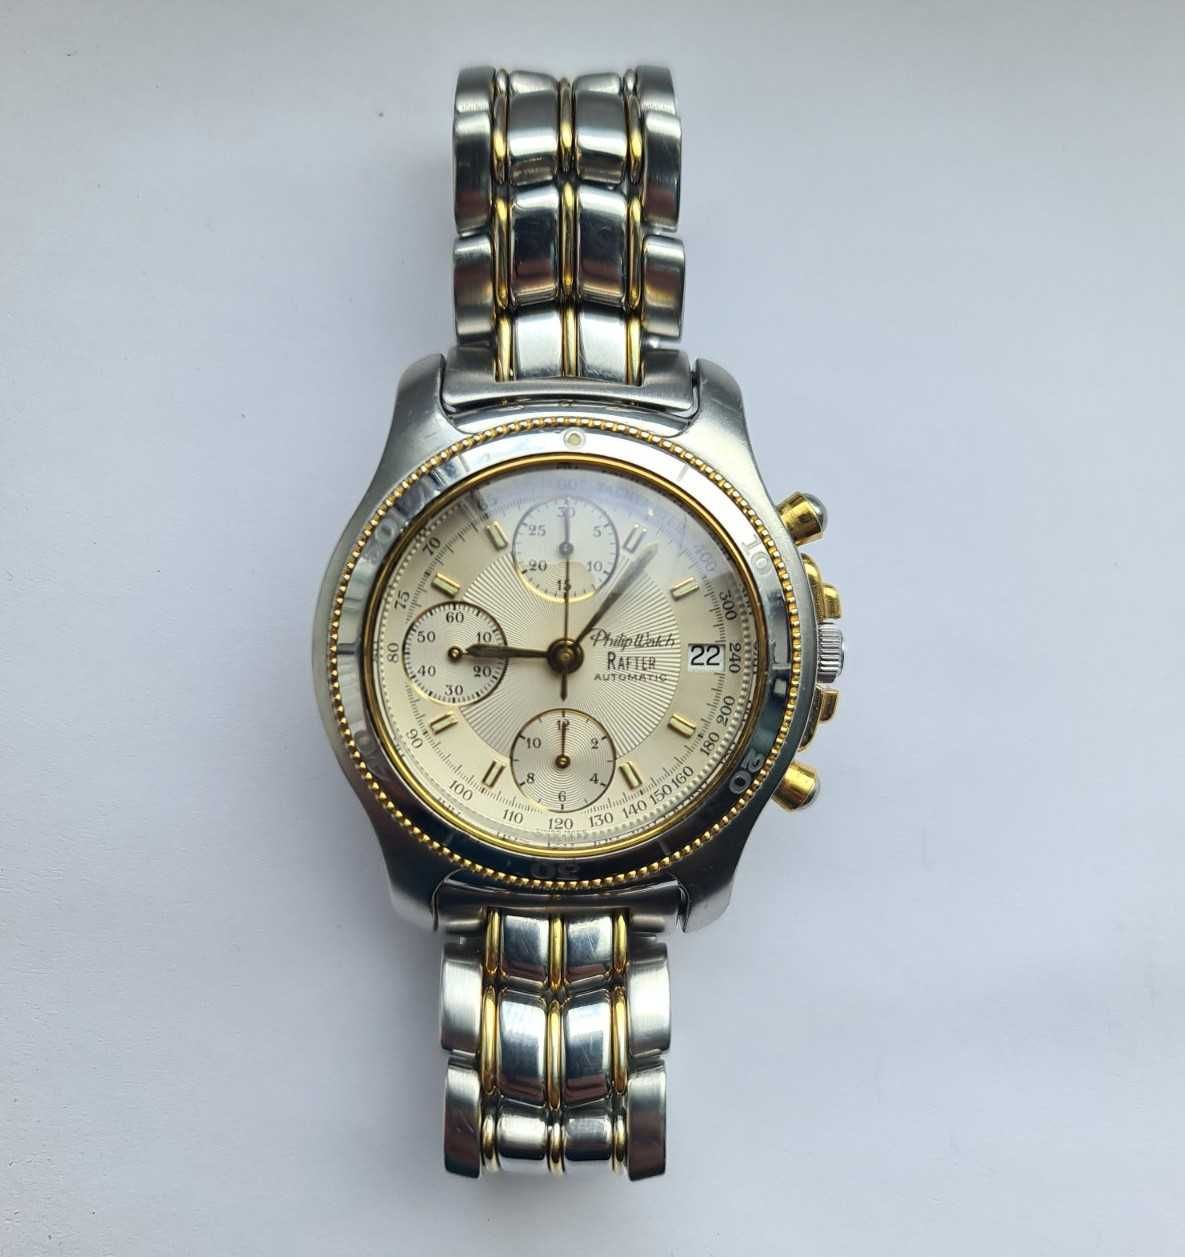 Швейцарские часы Philip Watch Rafter ETA 7750 Механика, сапфир